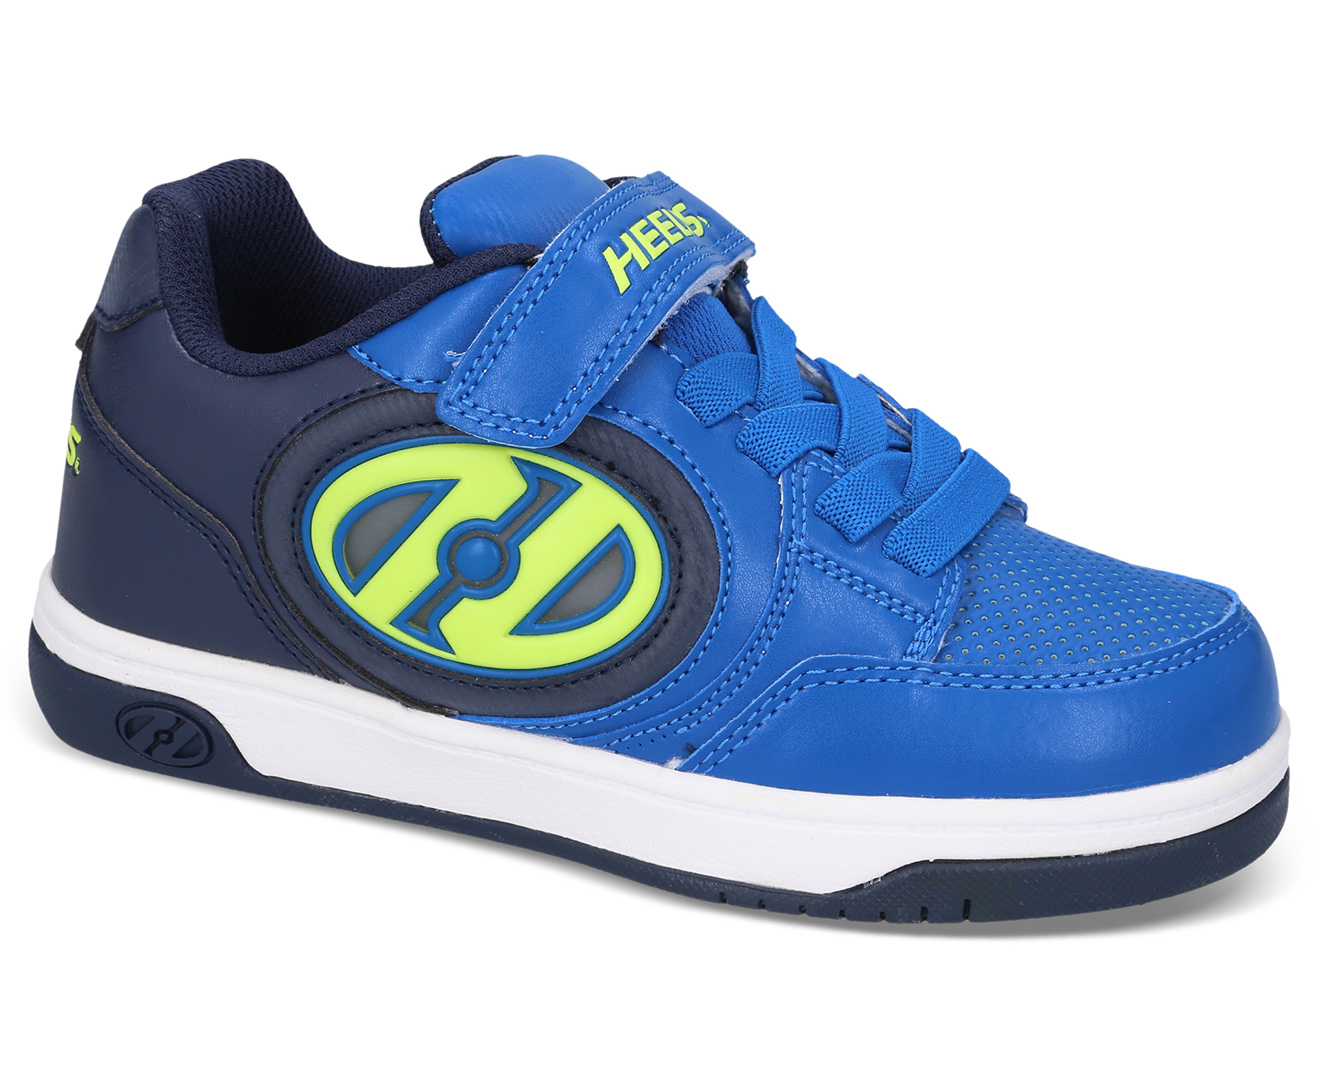 Heelys Boys' Plus X2 Lighted Skate Shoes - Navy/Blue/Yellow | Catch.com.au